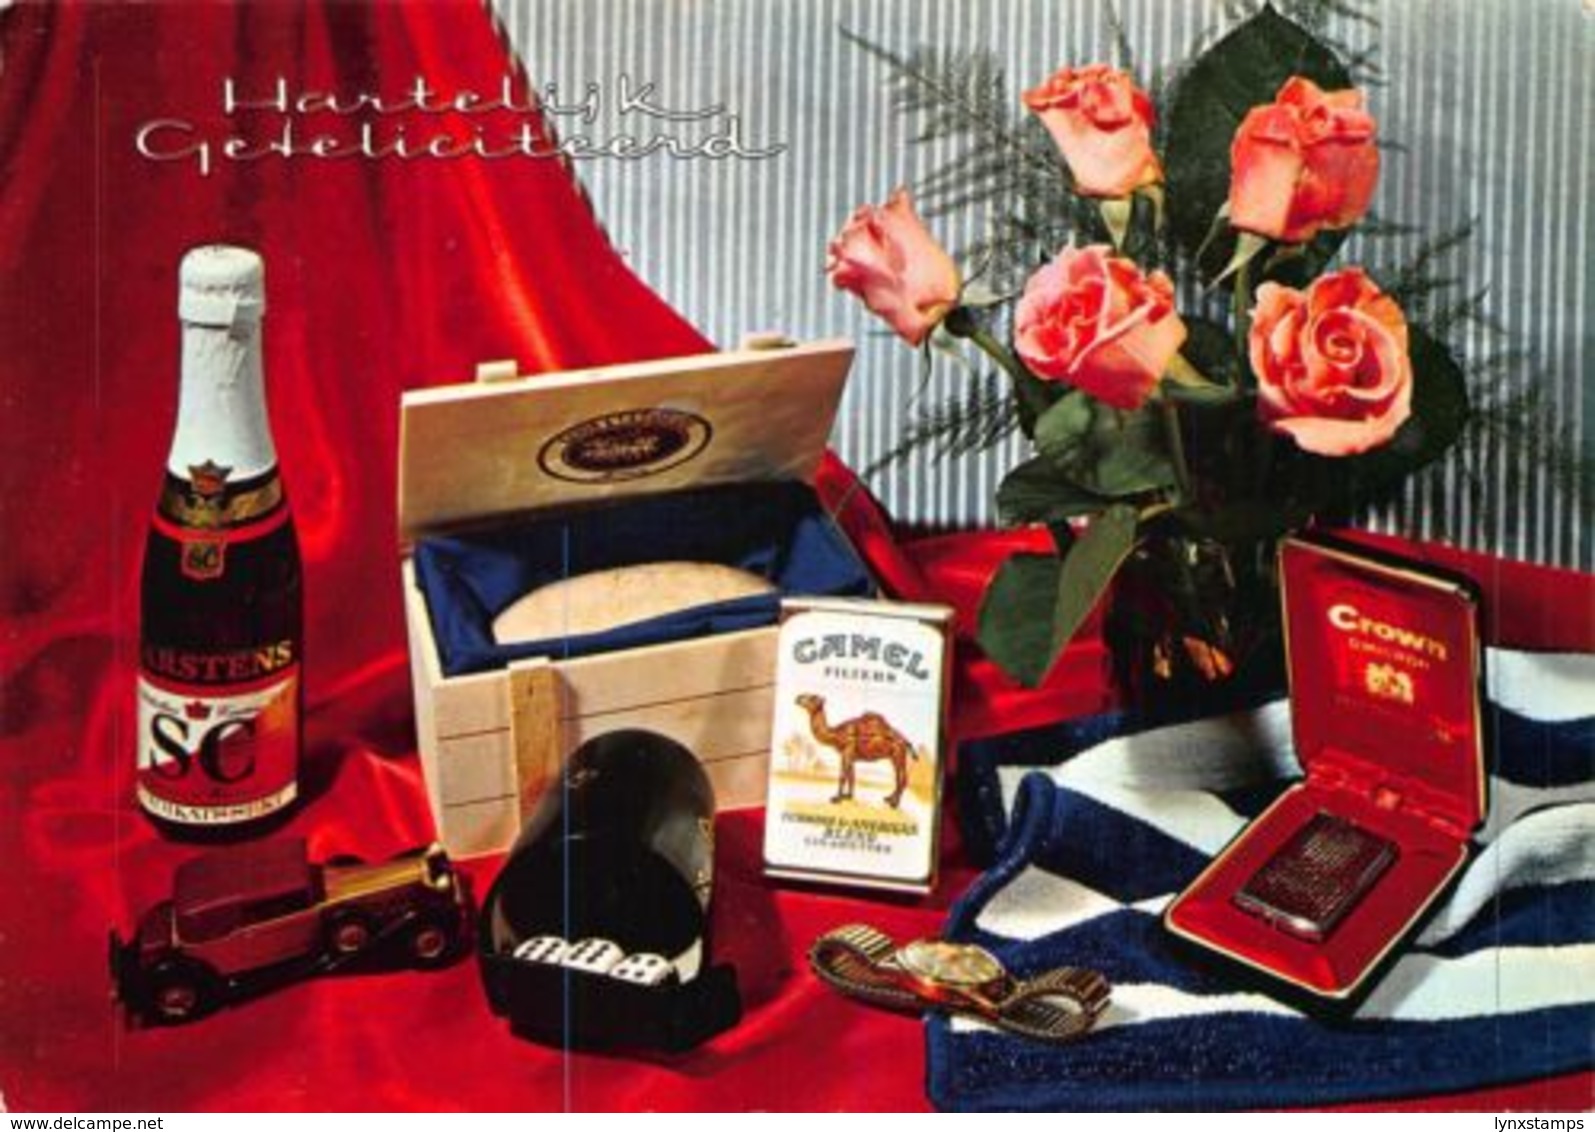 Hartelijk Gefeliciteerd Flowers In Vase Arstens Bottle Camel Cigars Postcard - Souvenir De...